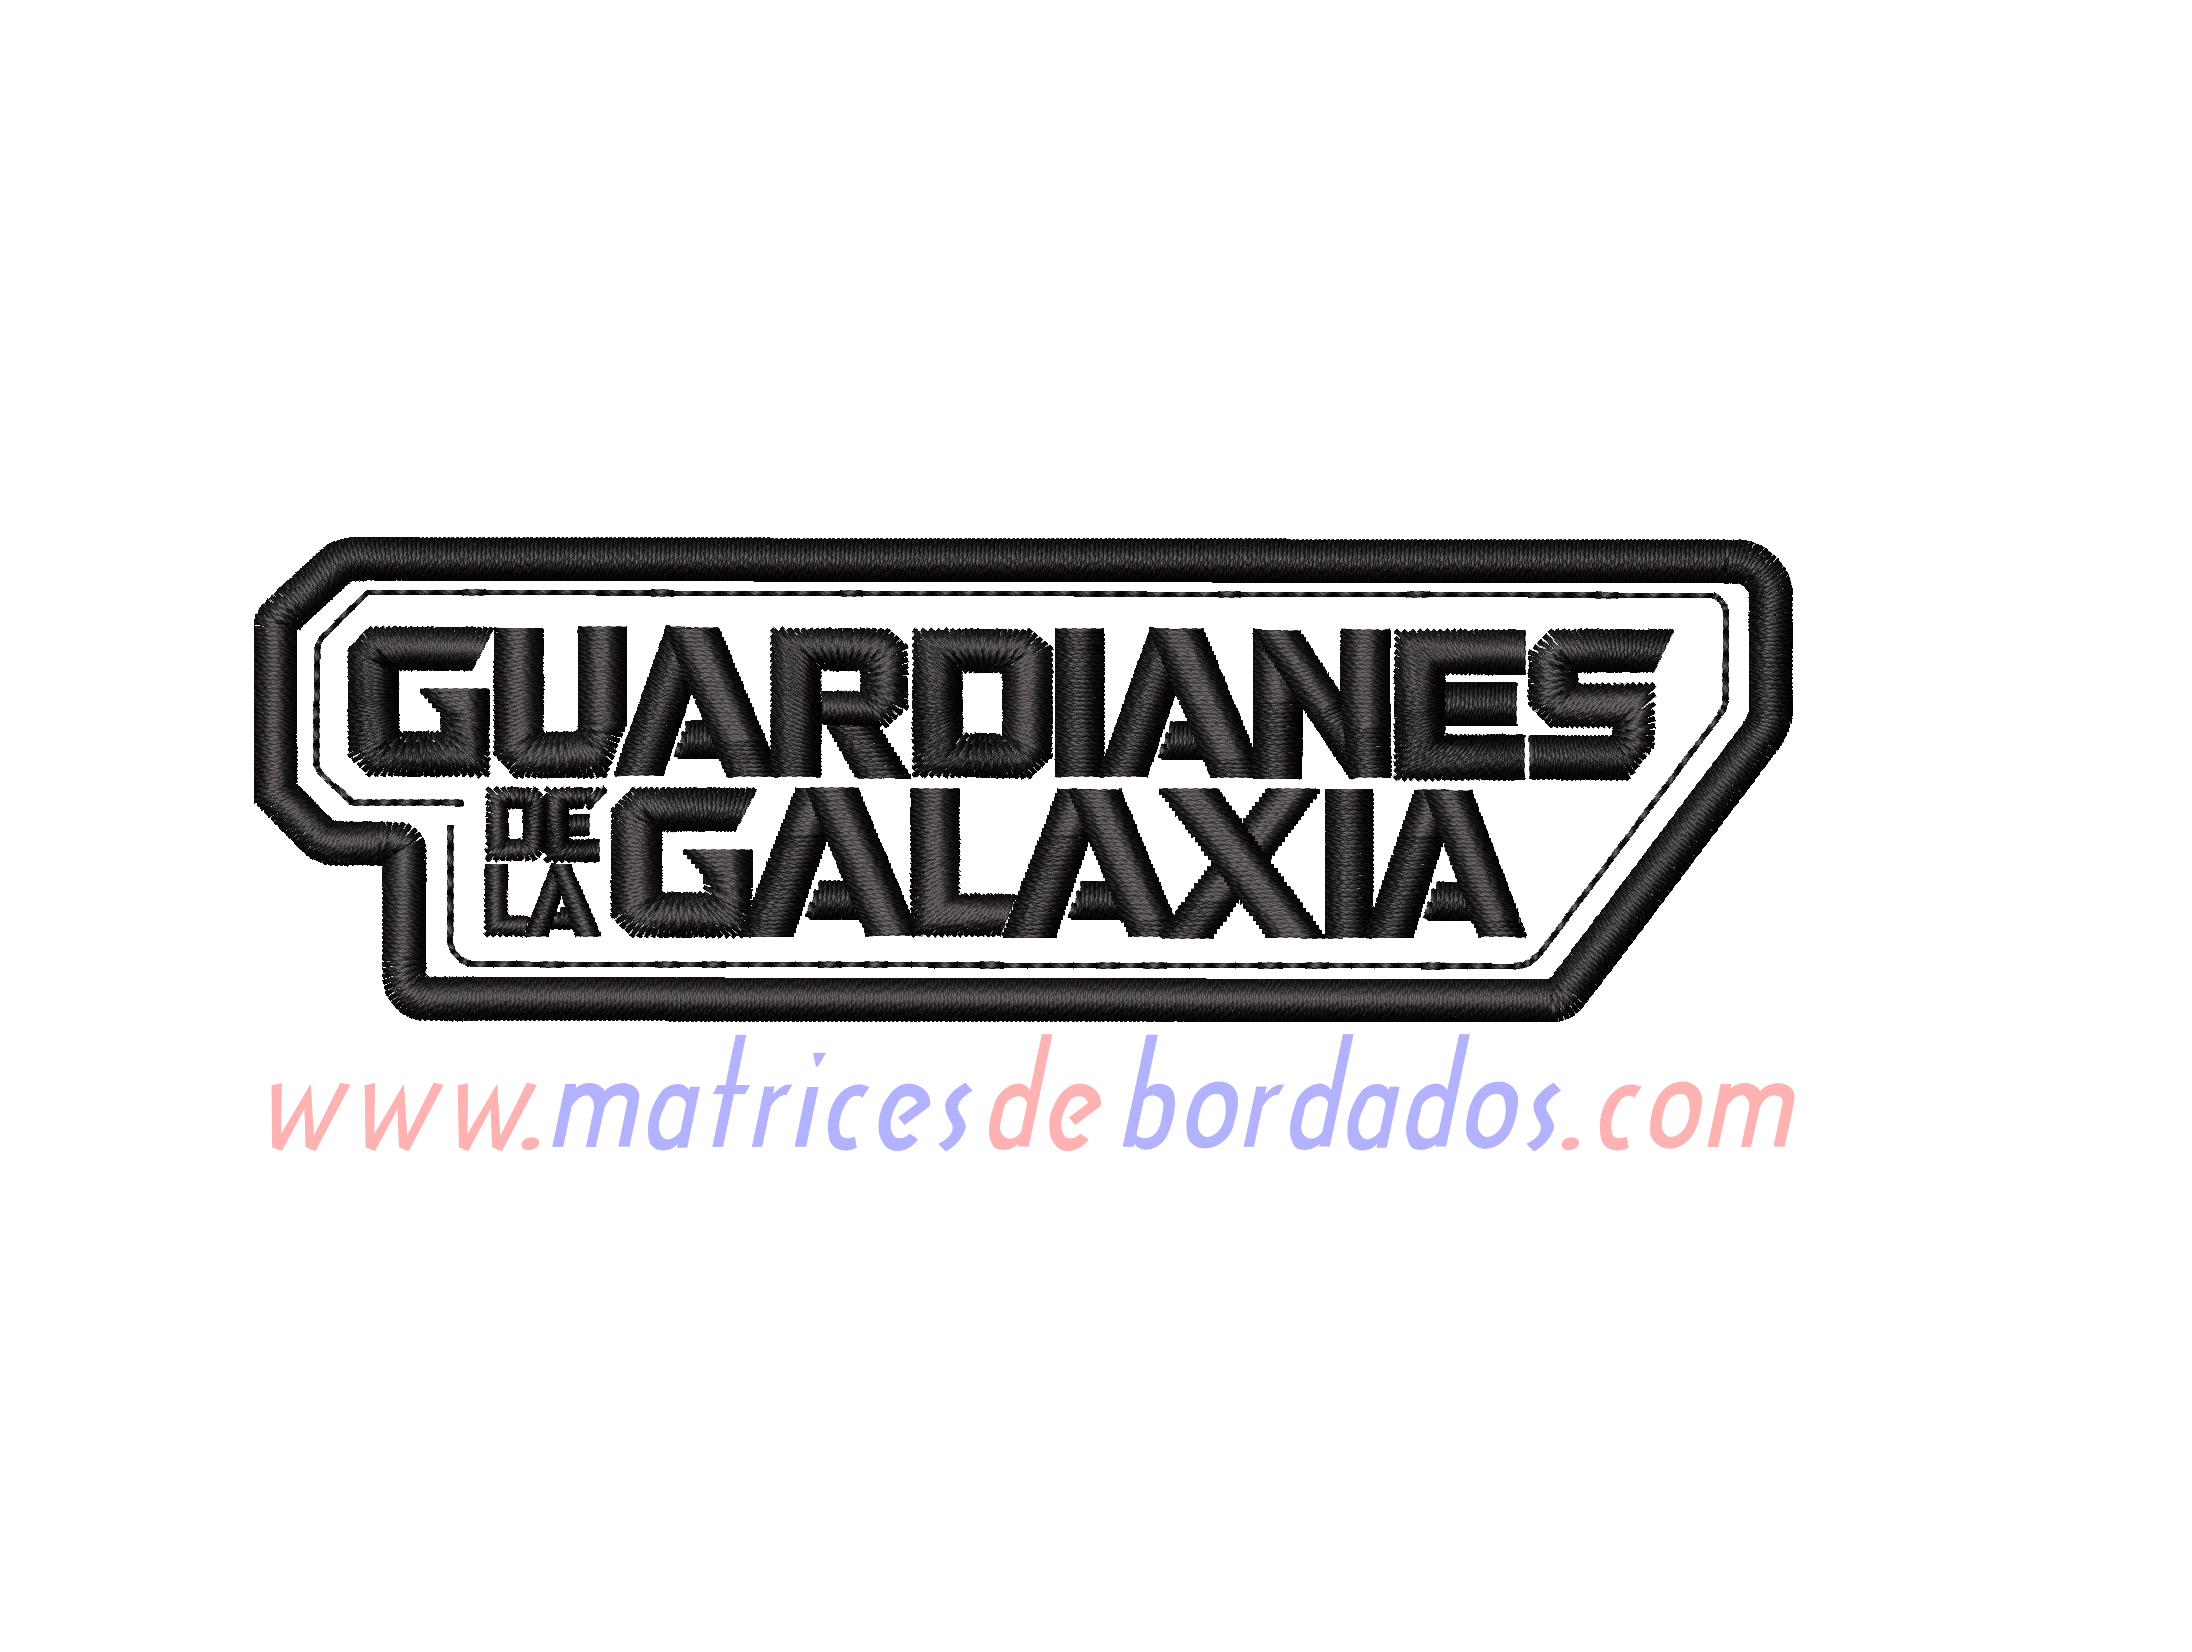 GV78RG - Guardianes de la galaxia